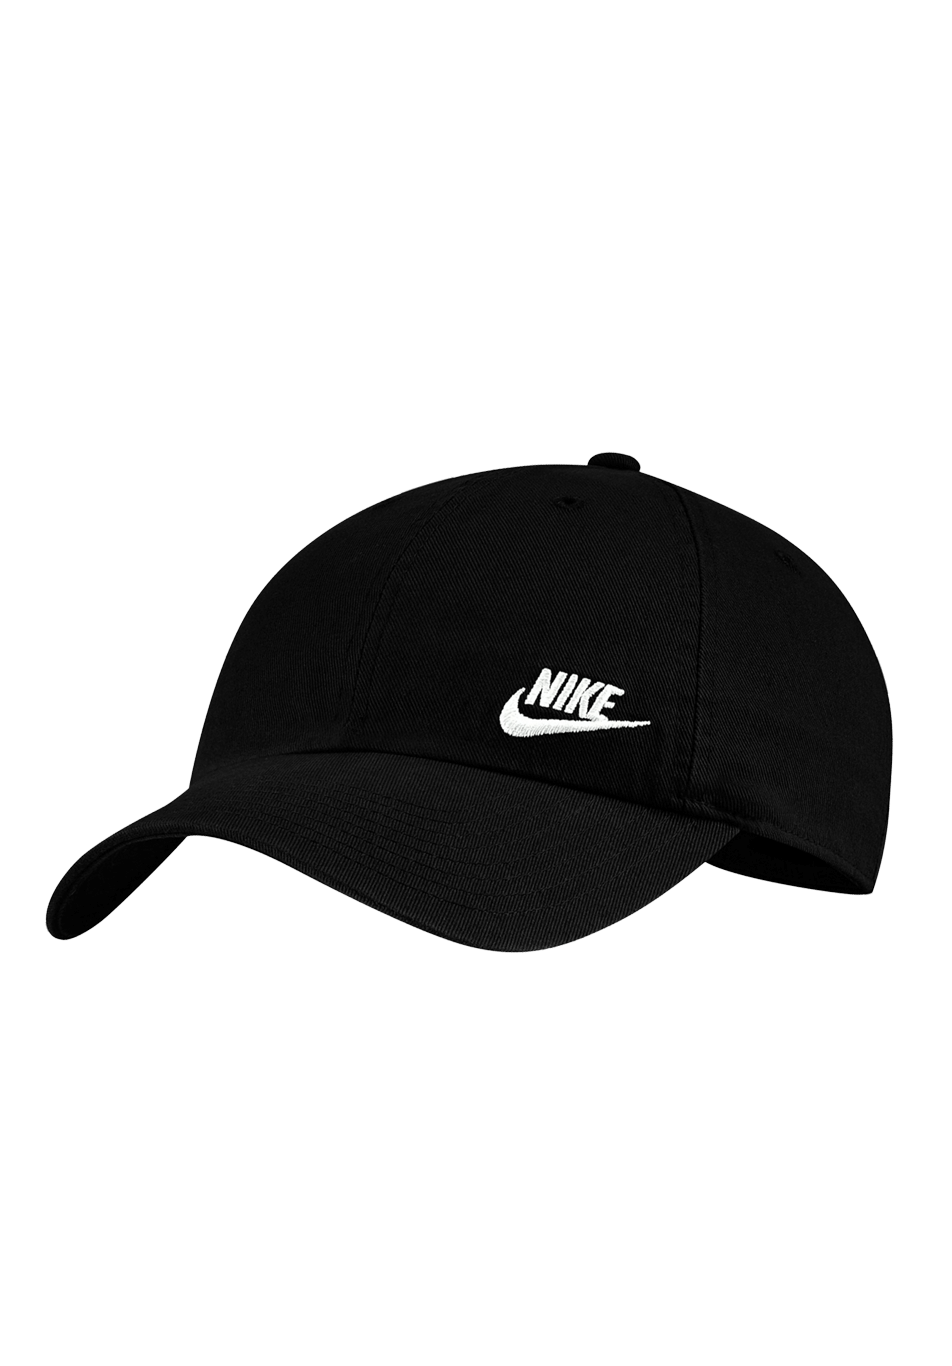 Nike SB Hertiage 86 Dad Hat Side LogoBlack